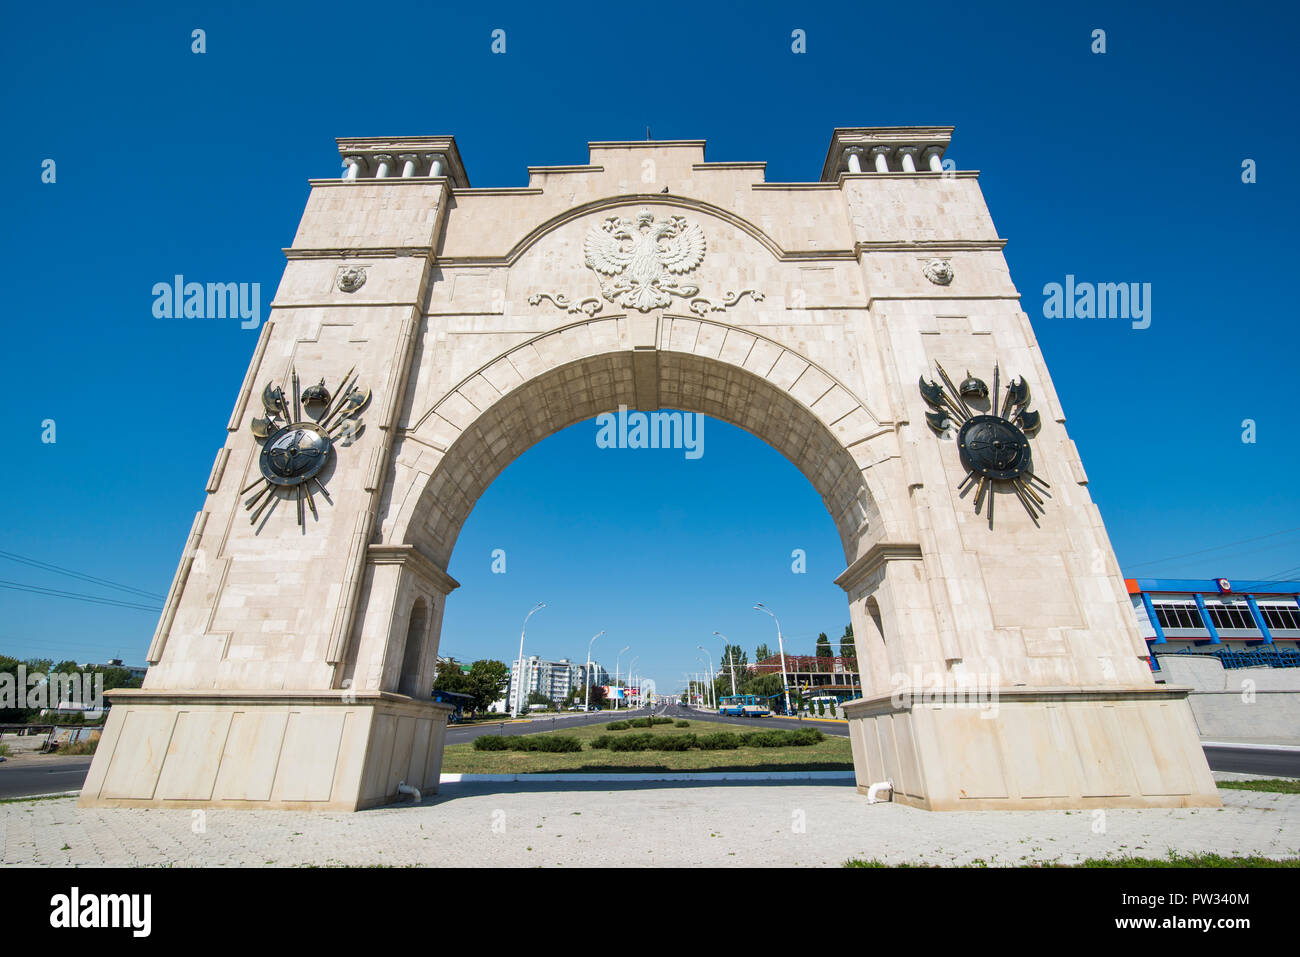 Memorial arch, Bender, Republic of Transnistria, Moldova Stock Photo